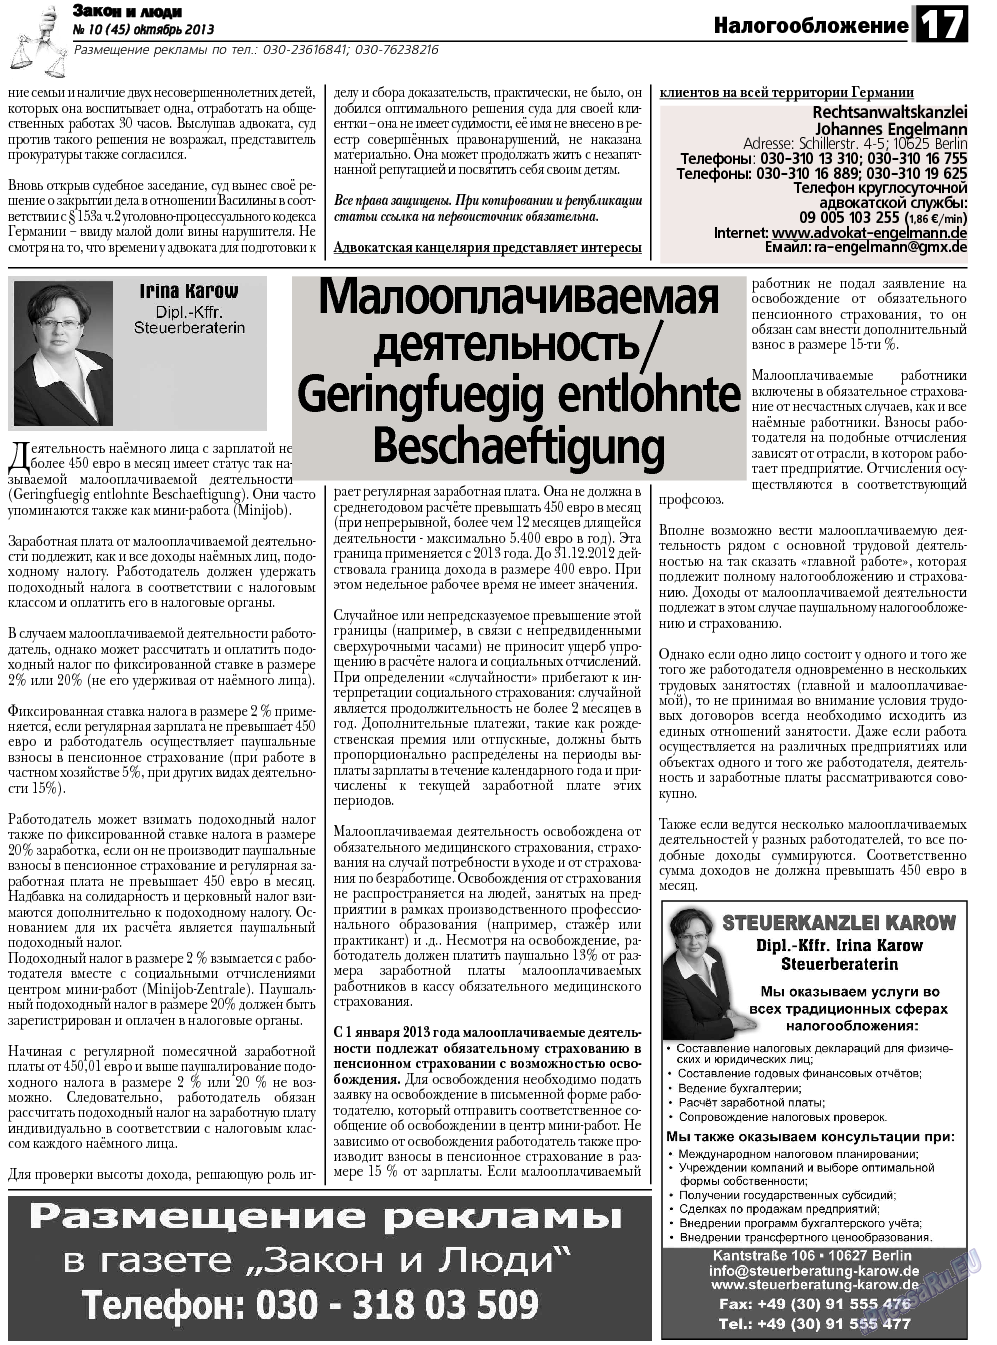 Закон и люди, газета. 2013 №10 стр.17